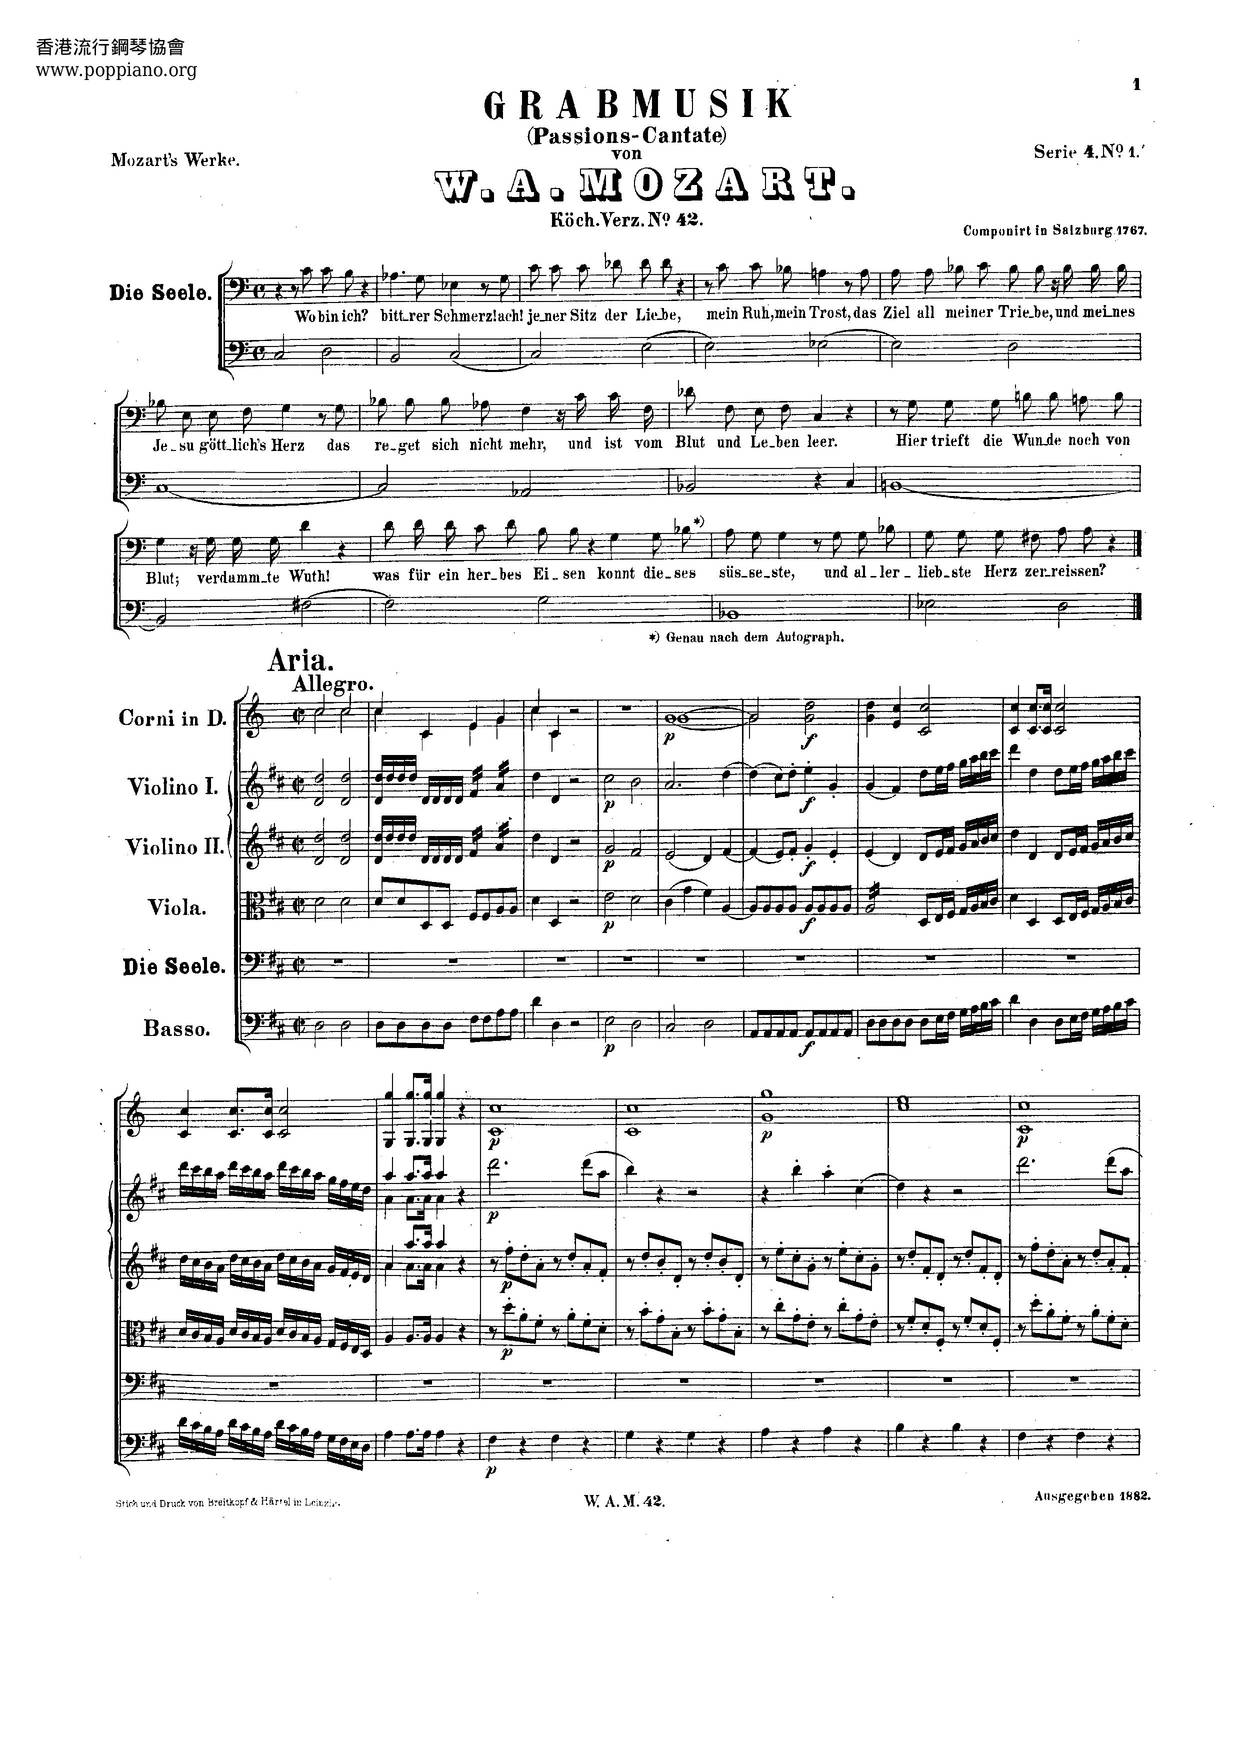 Grabmusik, K. 42/35A Score